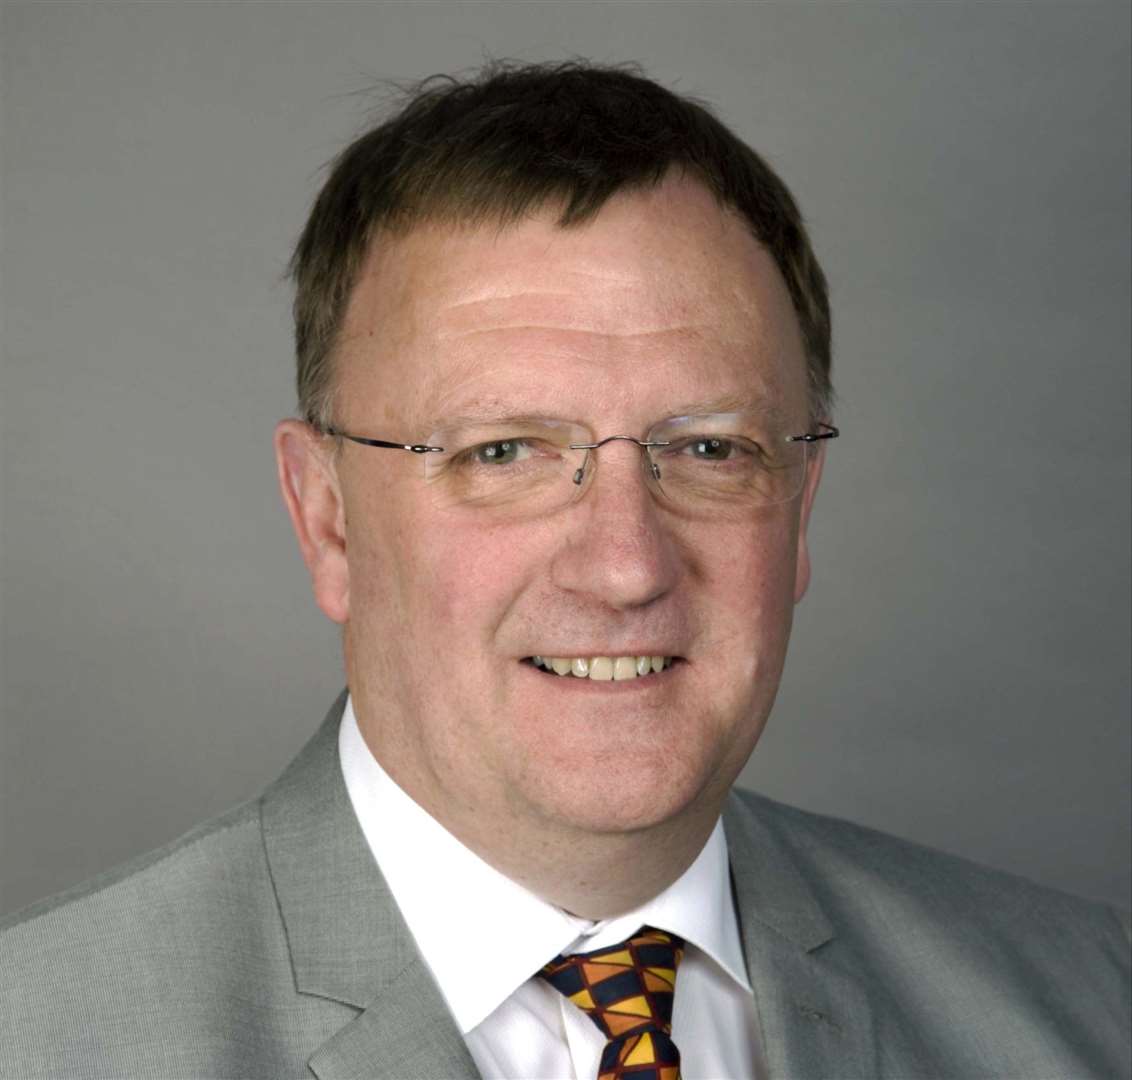 Councillor Paul Johnston remained uncertain despite amendments.